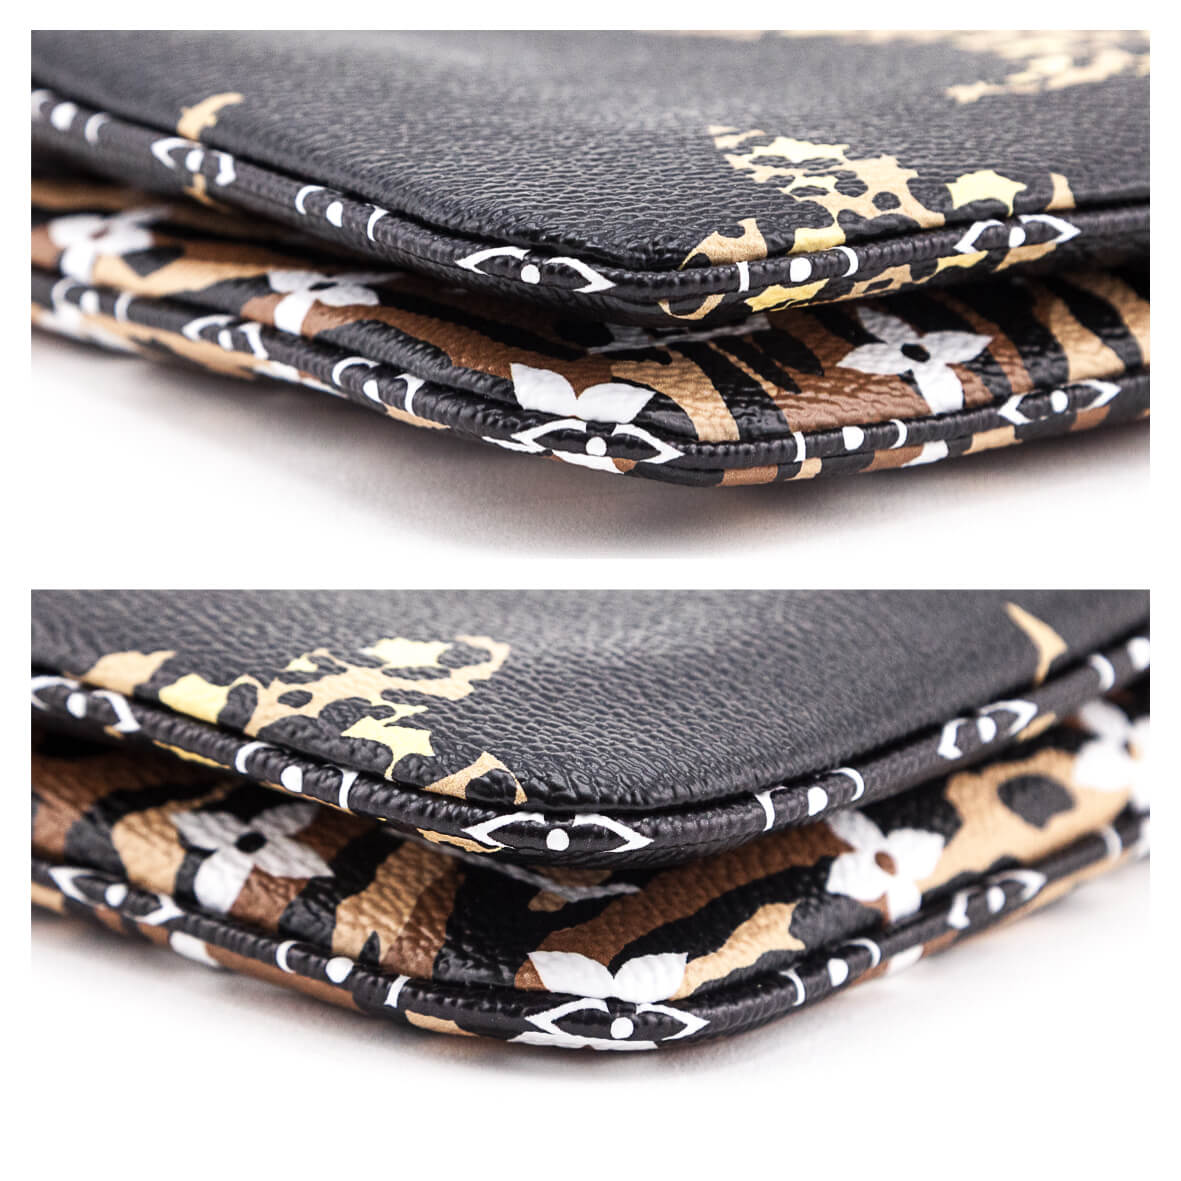 Louis Vuitton Jungle Pochette Double Zip Crossbody bag leopard